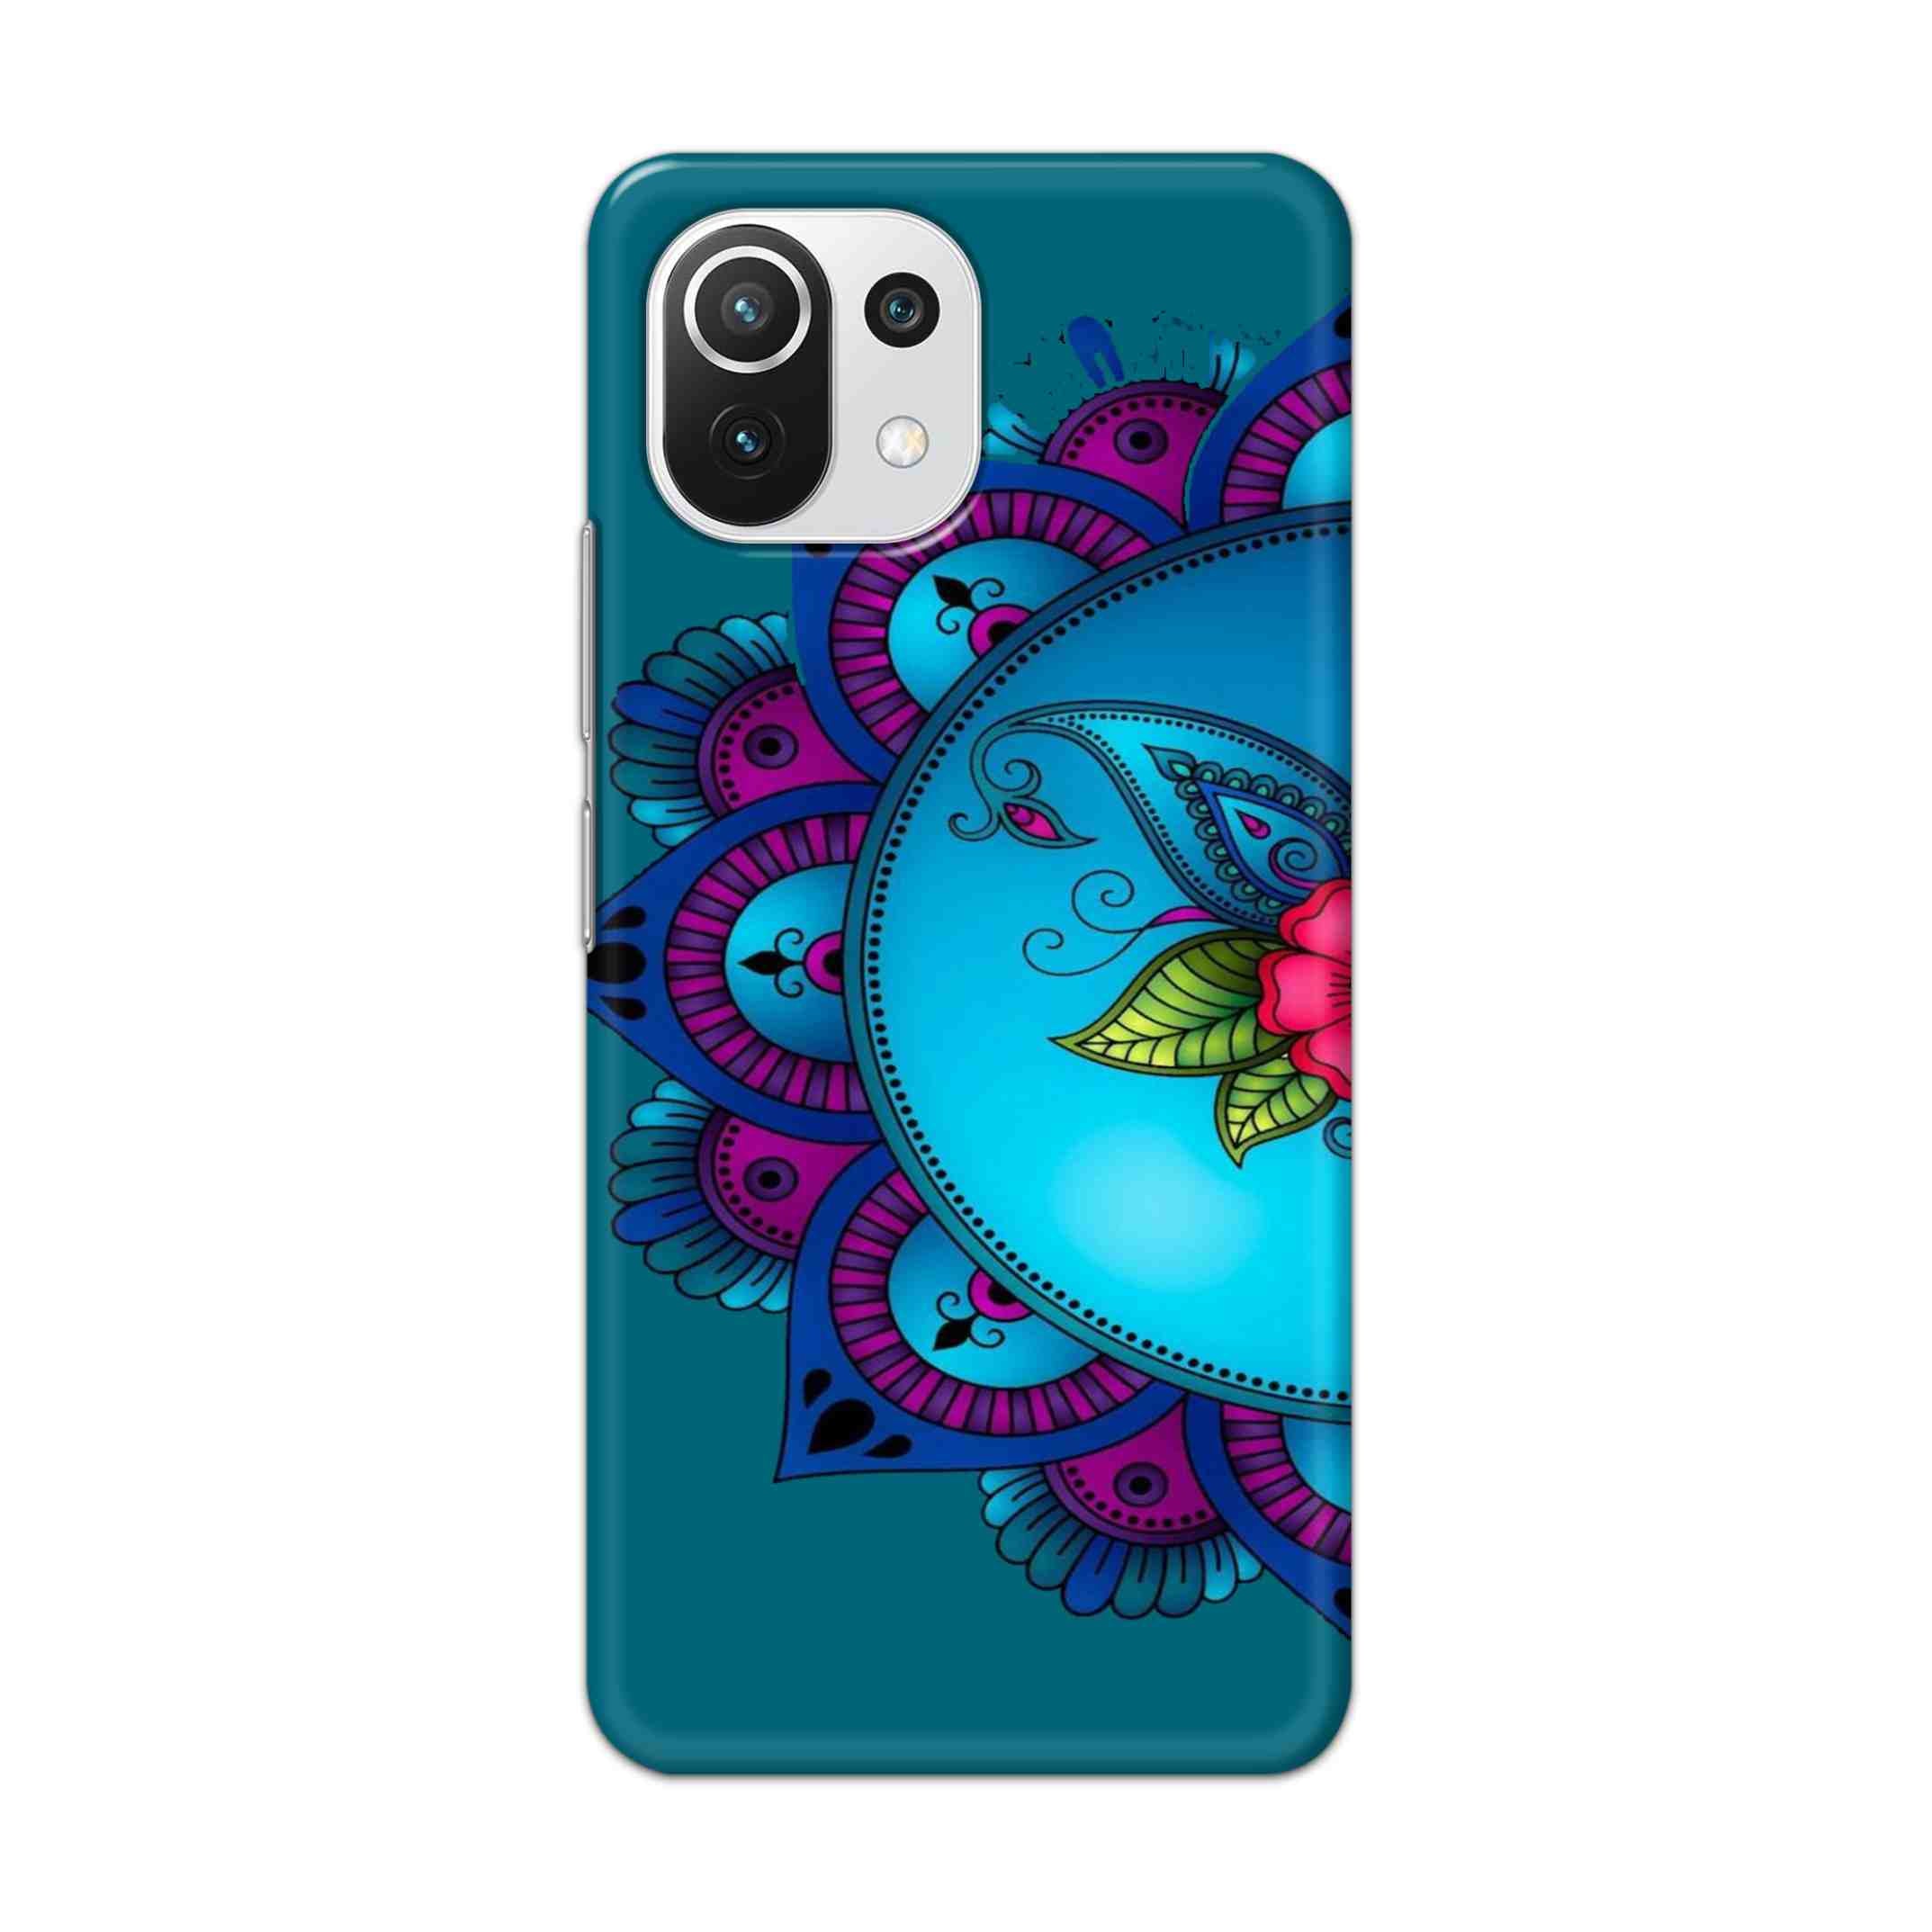 Buy Star Mandala Hard Back Mobile Phone Case Cover For Mi 11 Lite NE 5G Online